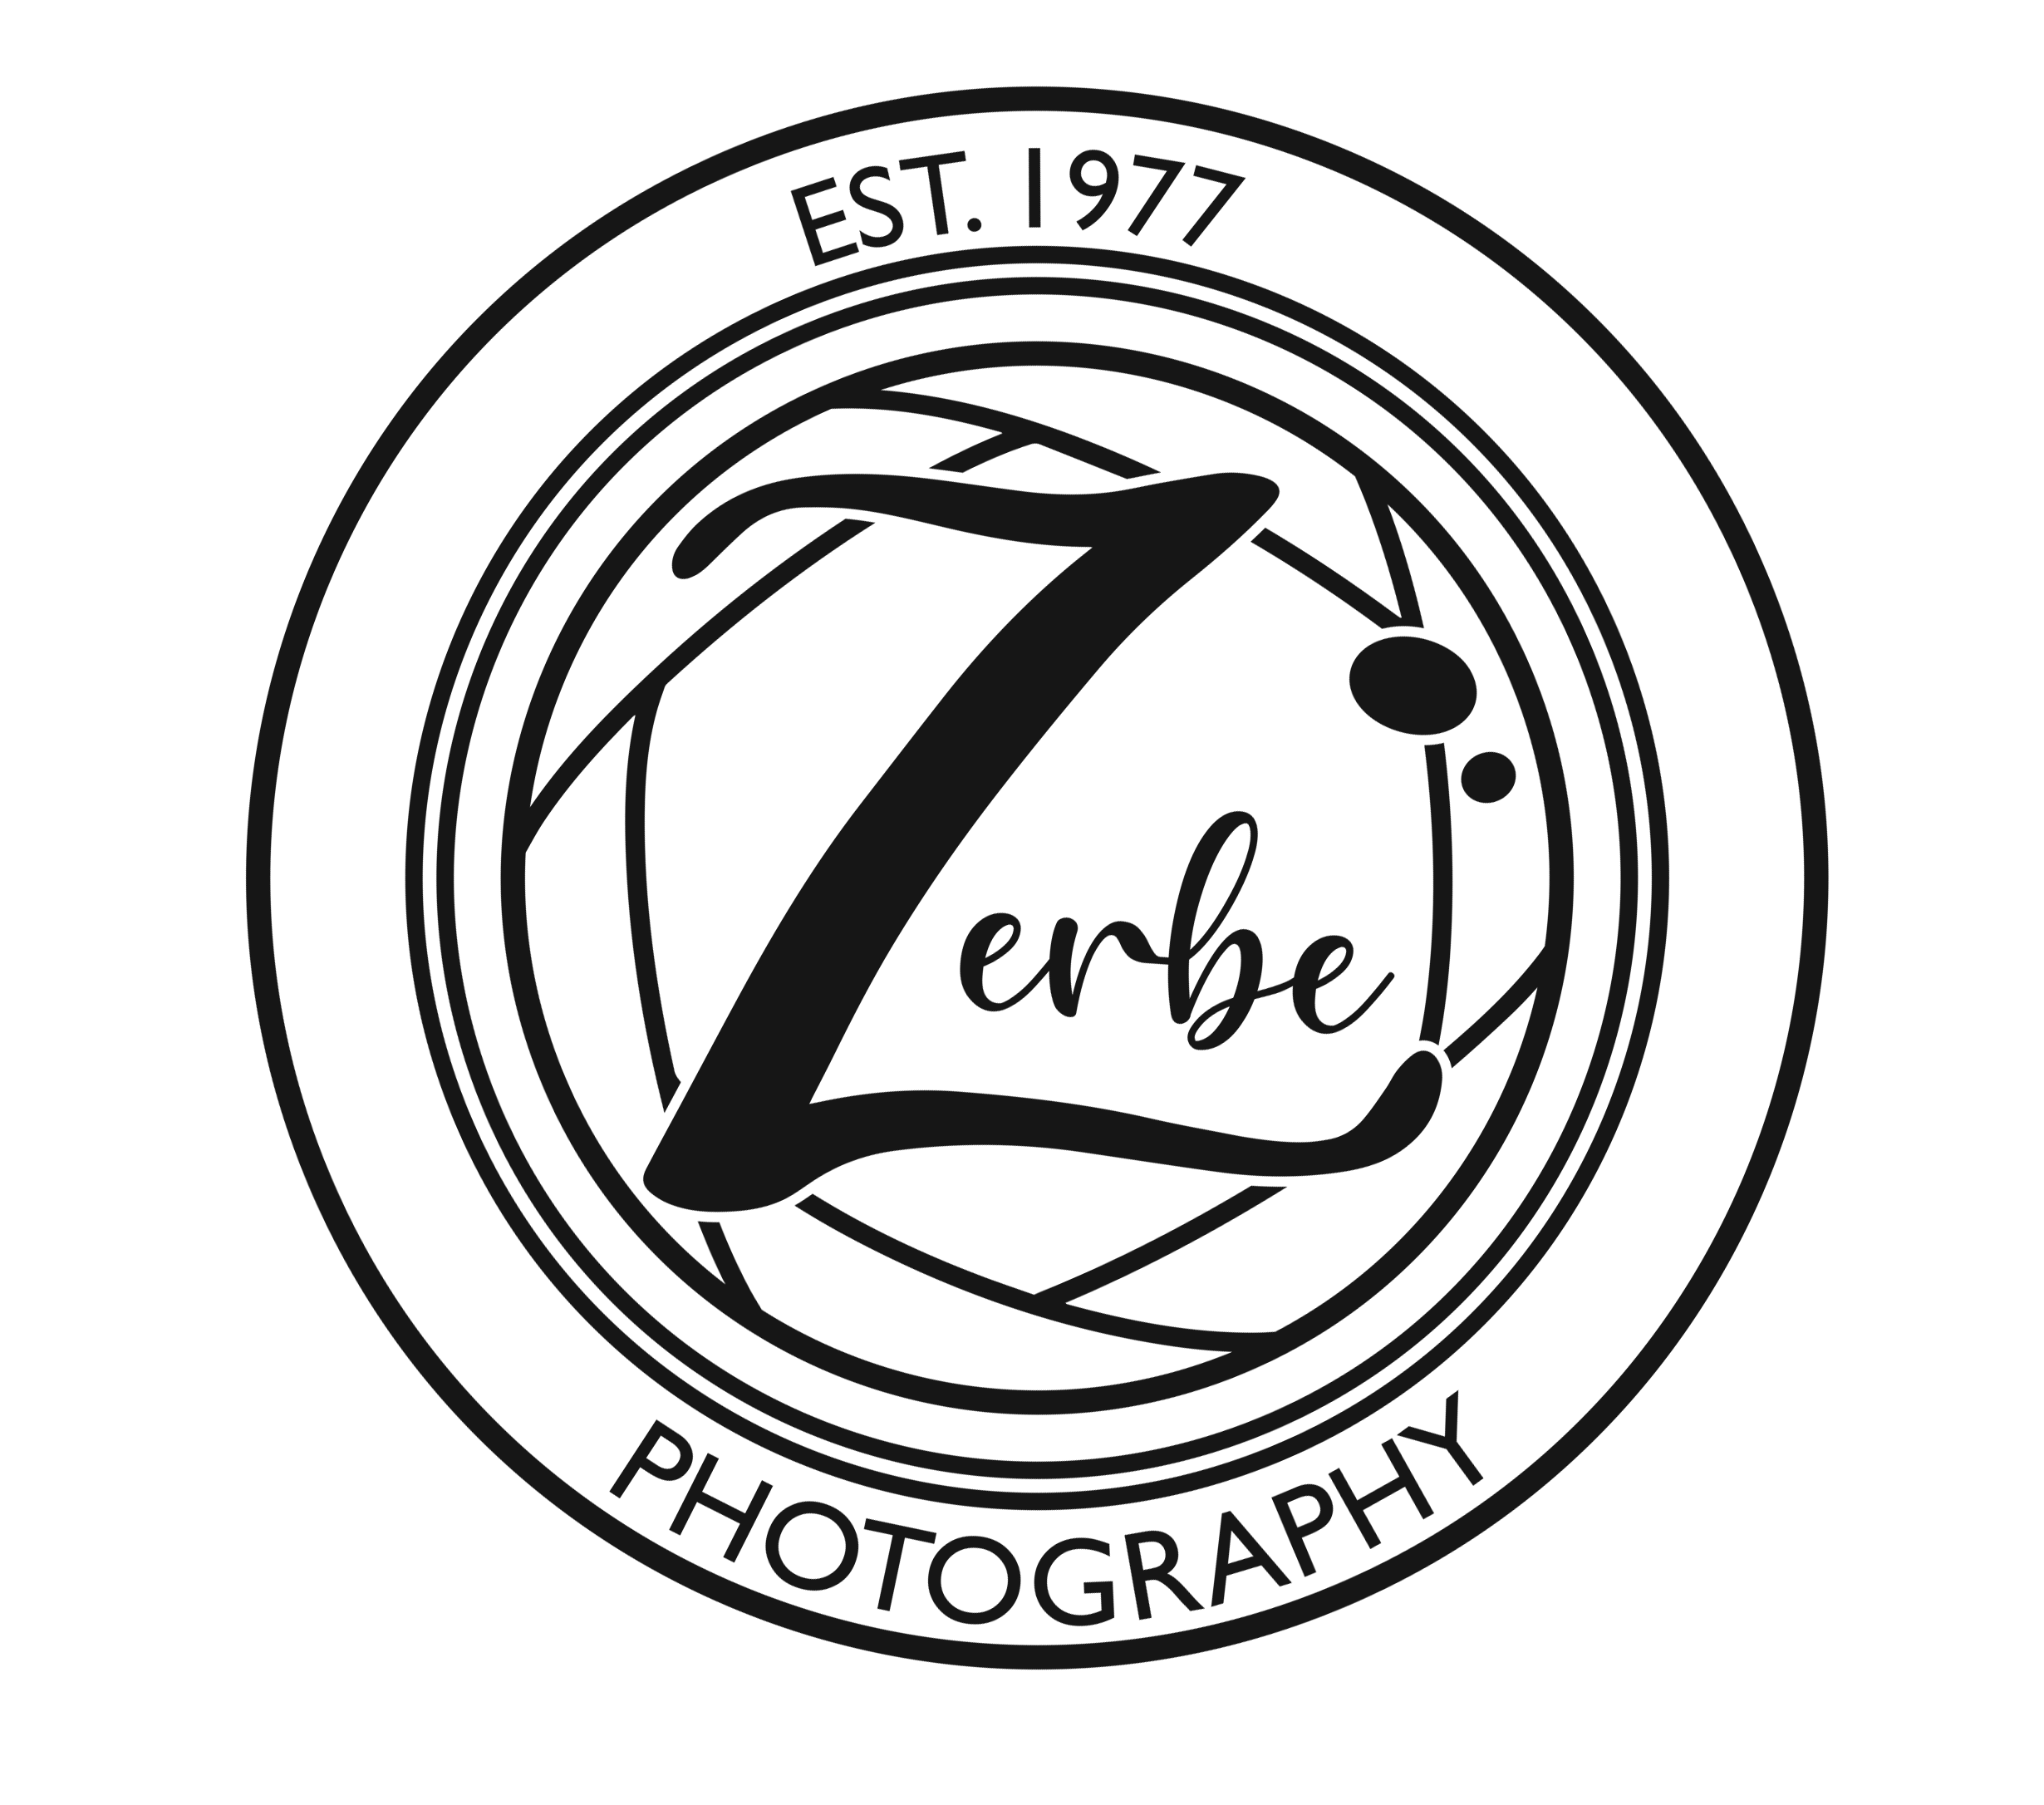 Zerbe Photography